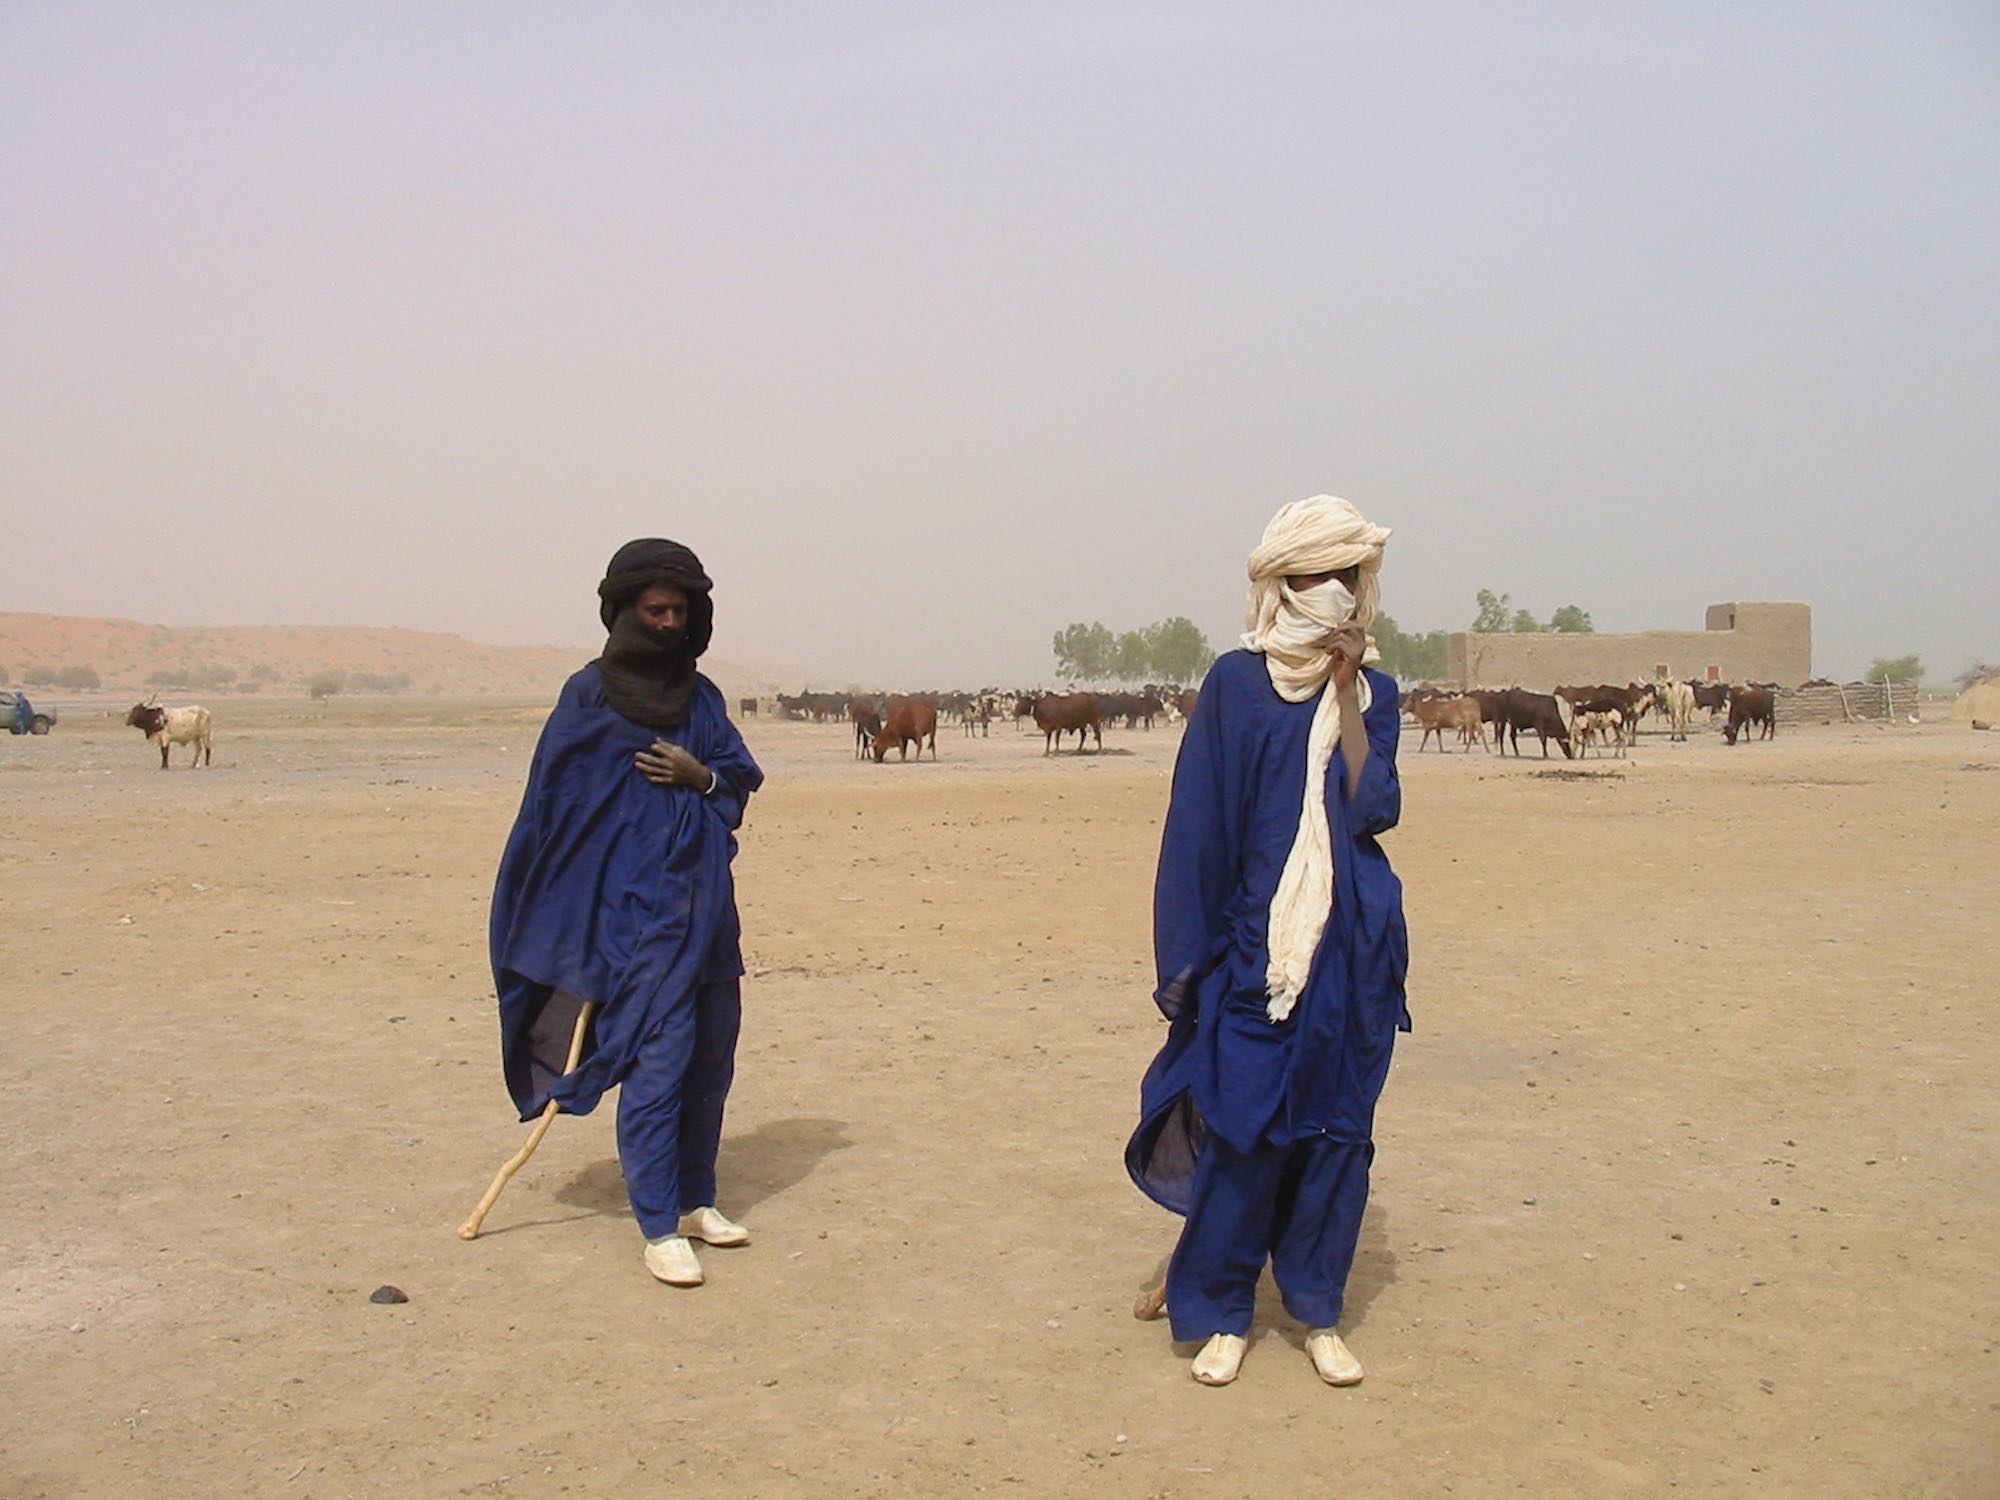 Fulani herders in Mali